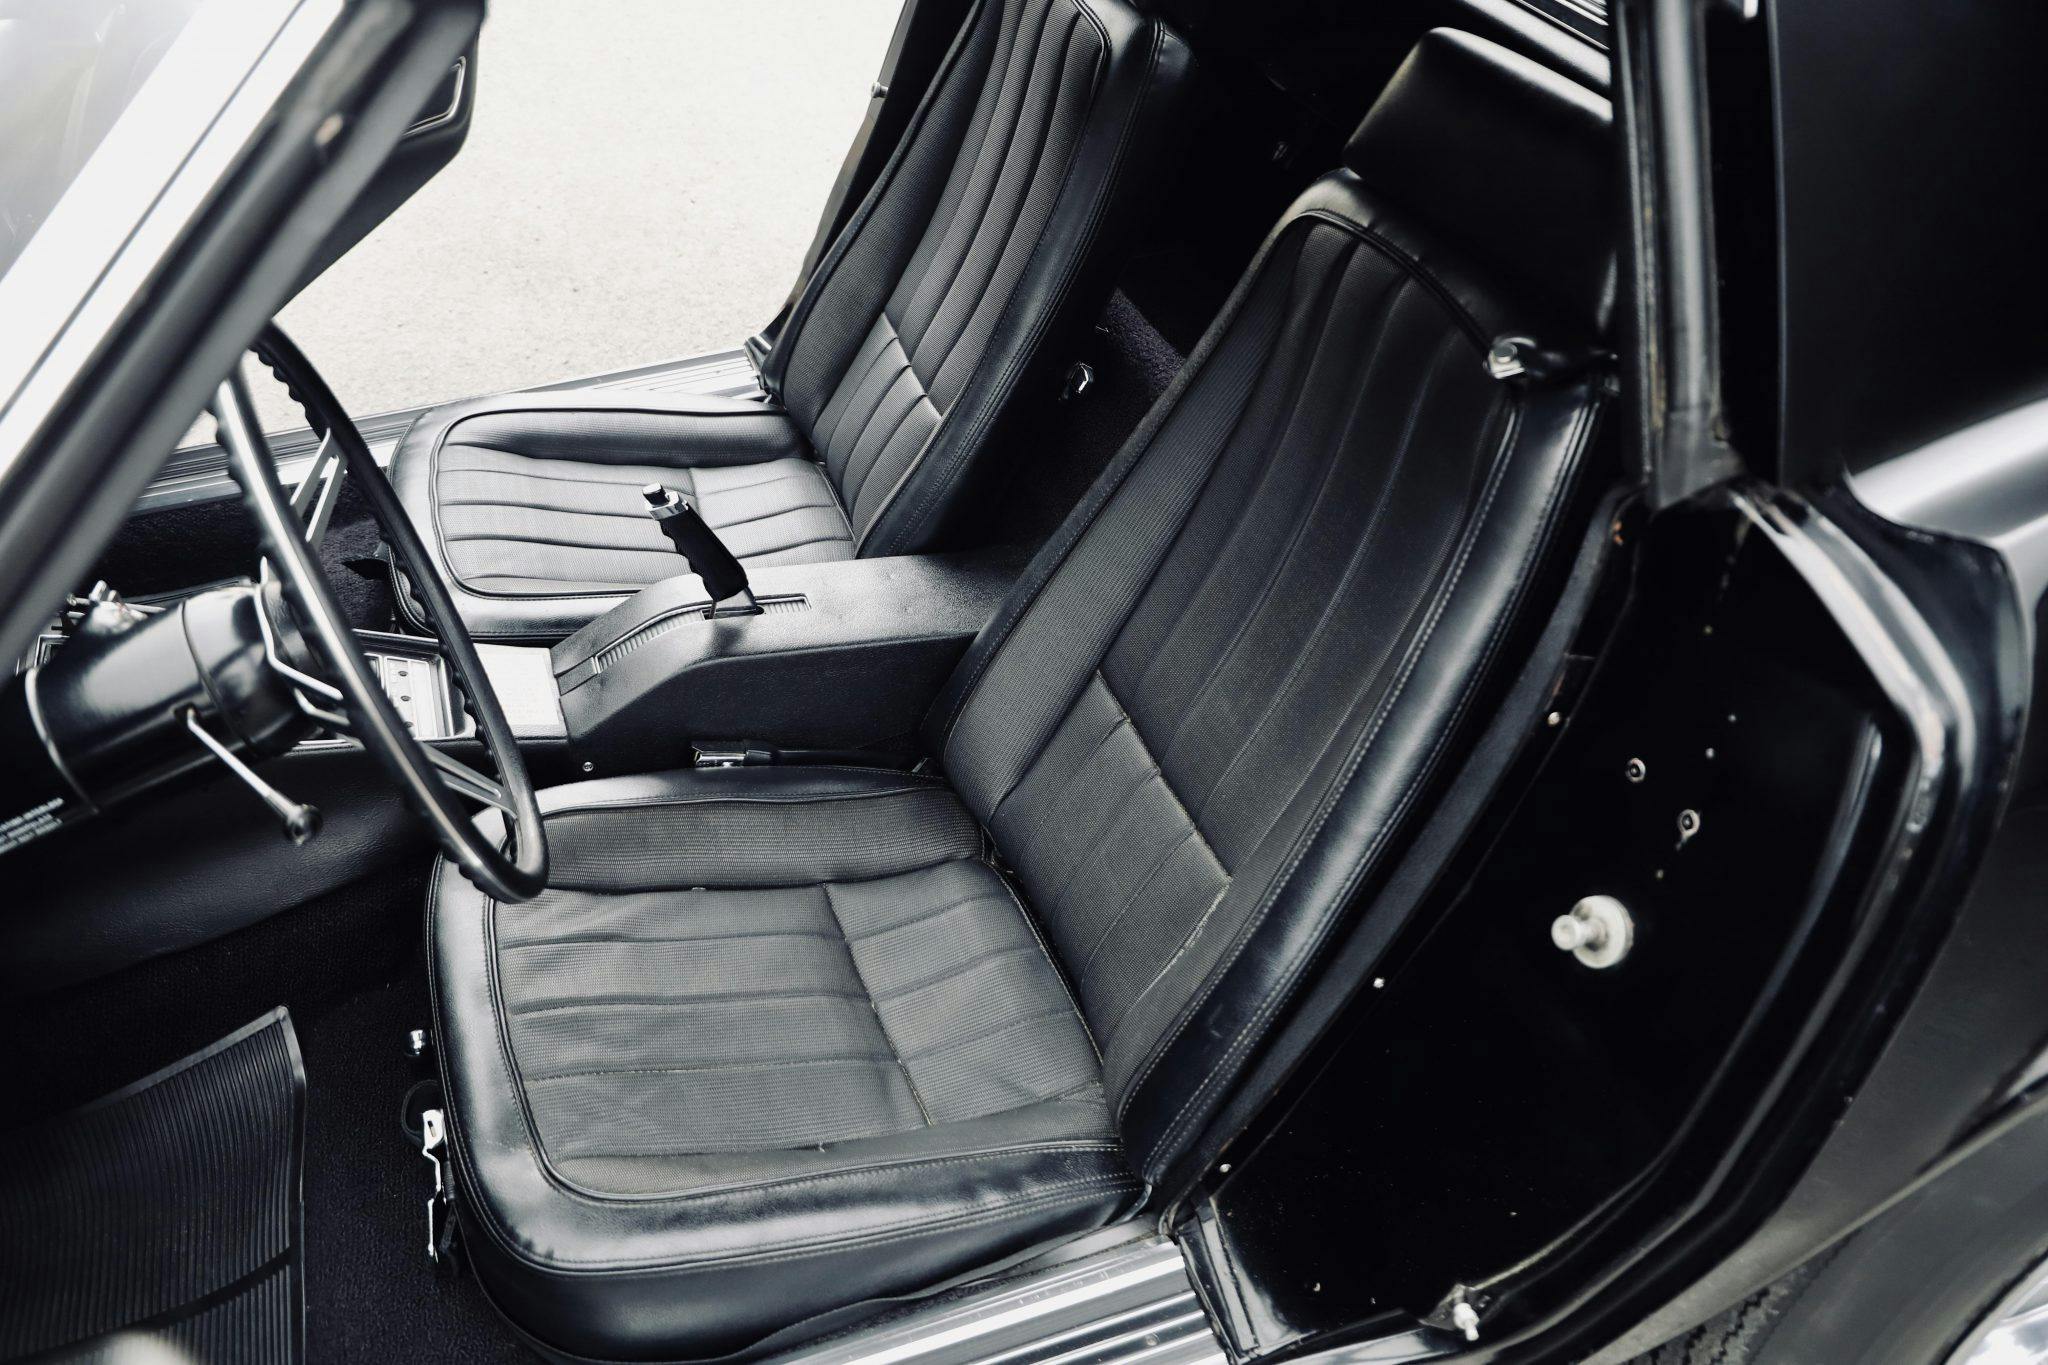 1969 Chevrolet Corvette L88 coupe Tuxedo Black interior